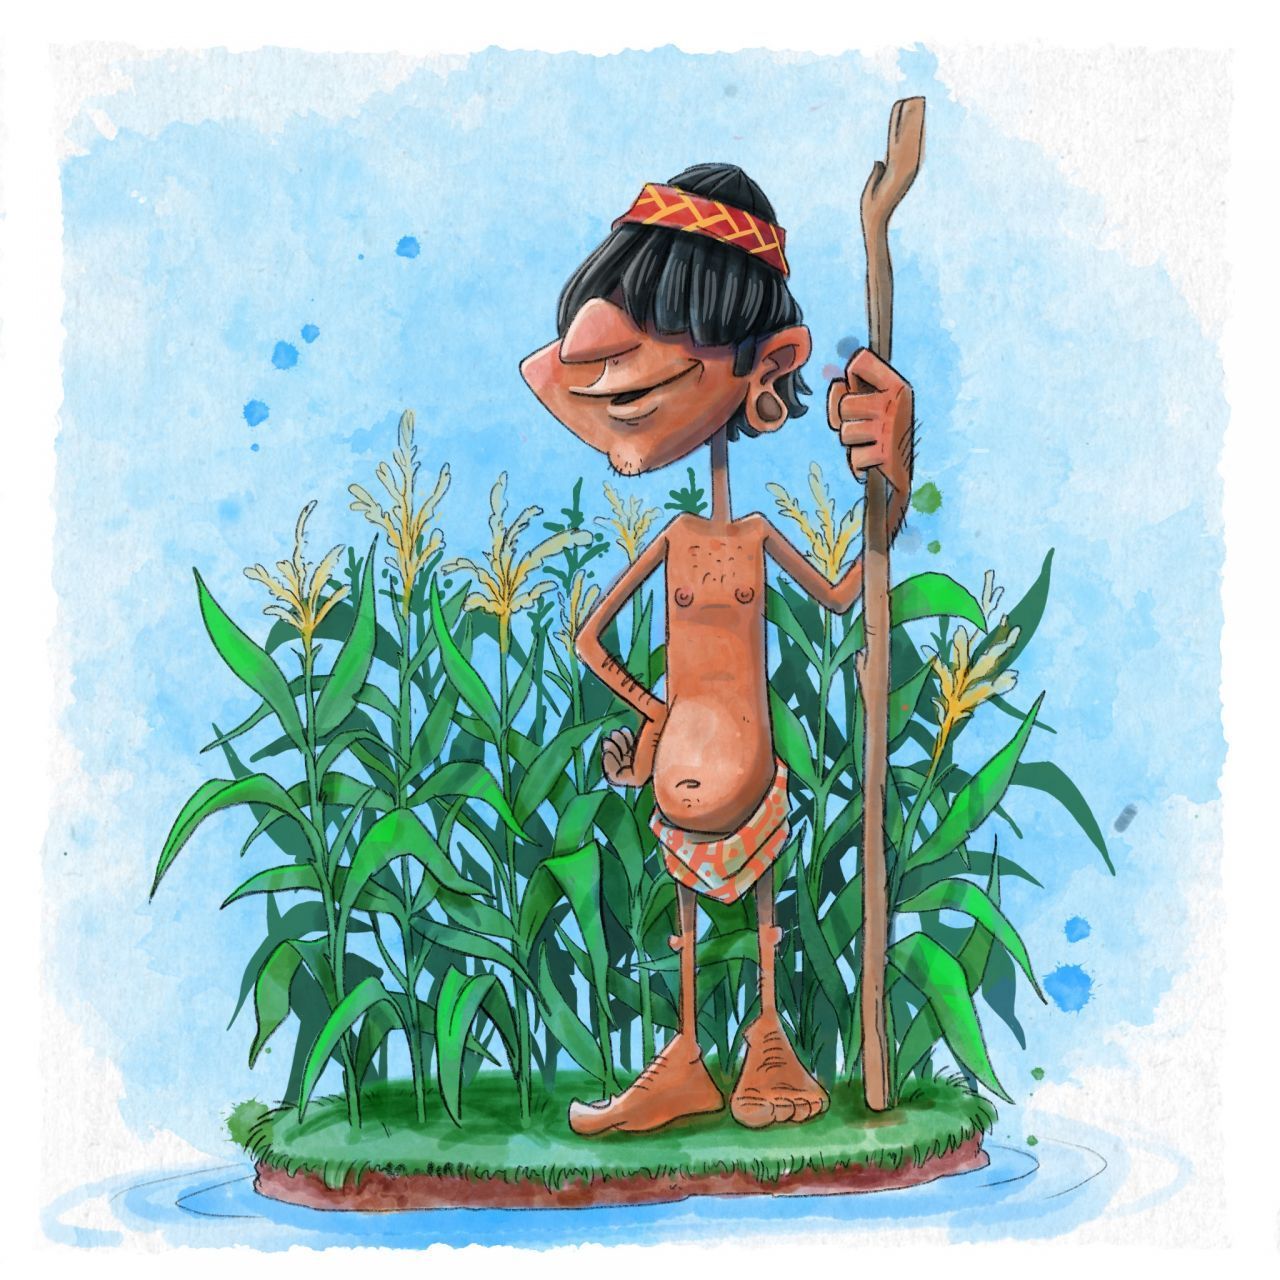 Dank ihrer Bewässerungs-Systeme betrieben die Azteken sehr erfolgreich Landwirtschaft. Sie legten sogenannte "schwimmende Gärten" auf Inseln an. Eines der Hauptnahrungsmittel war Mais. Aber auch schon Kürbis, Tomaten oder Bohnen wurden so ertragreich angebaut, dass sie im Überfluss vorhanden waren und auch als Handelsgut dienten. Kakao diente nicht nur als Nahrungsmittel, sondern auch als Währung.